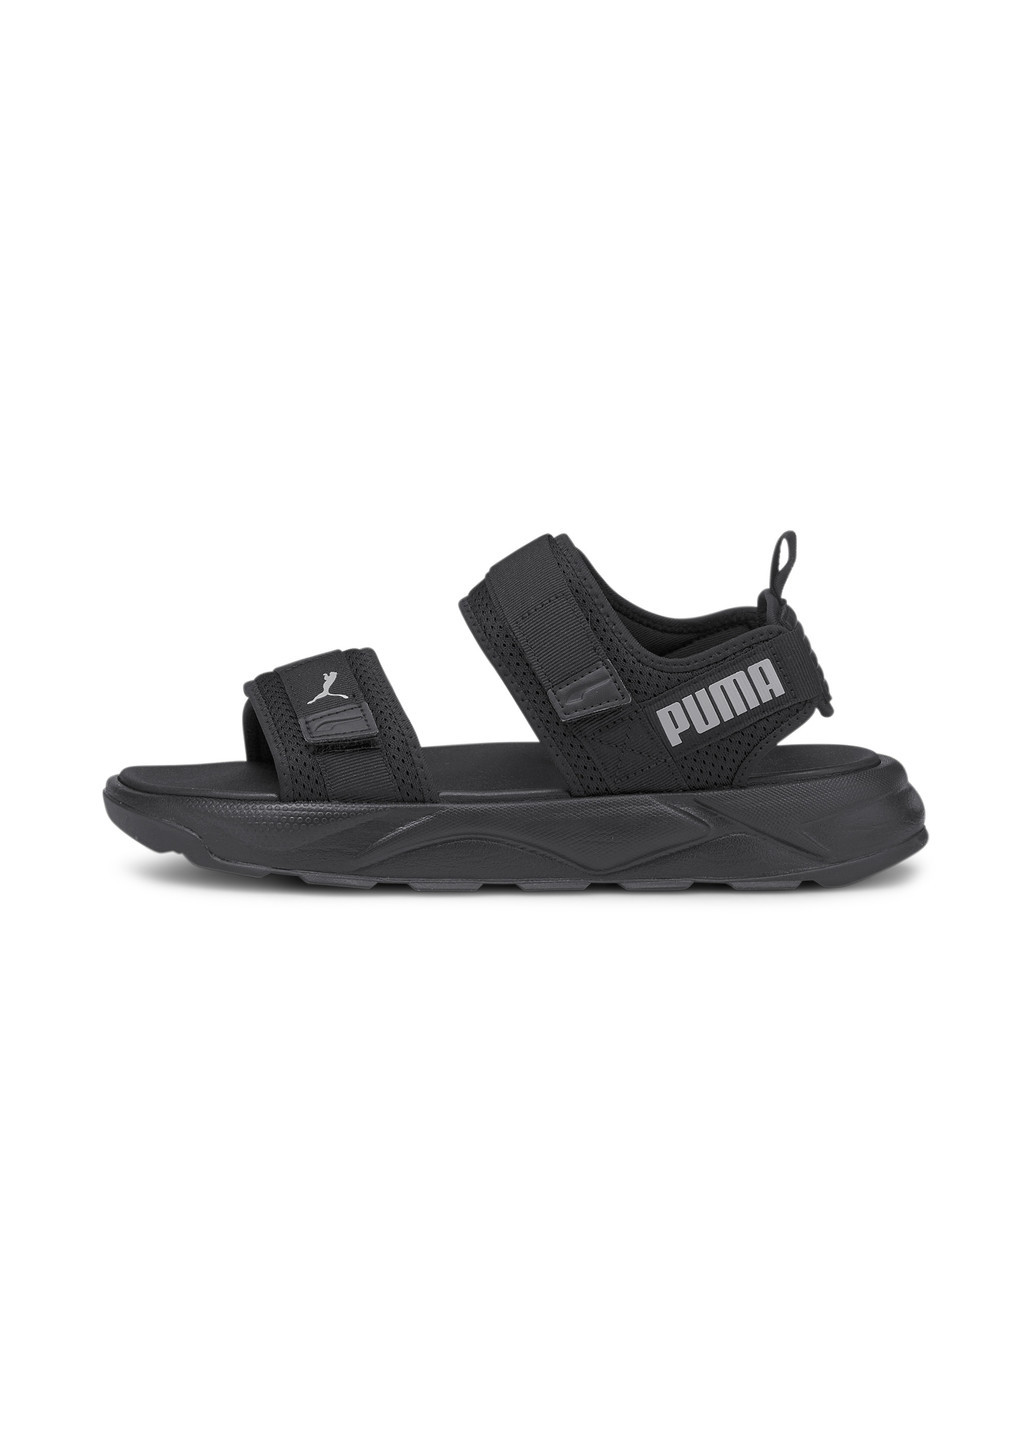 Сандалии RS Sandals Puma однотонные чёрные спортивные